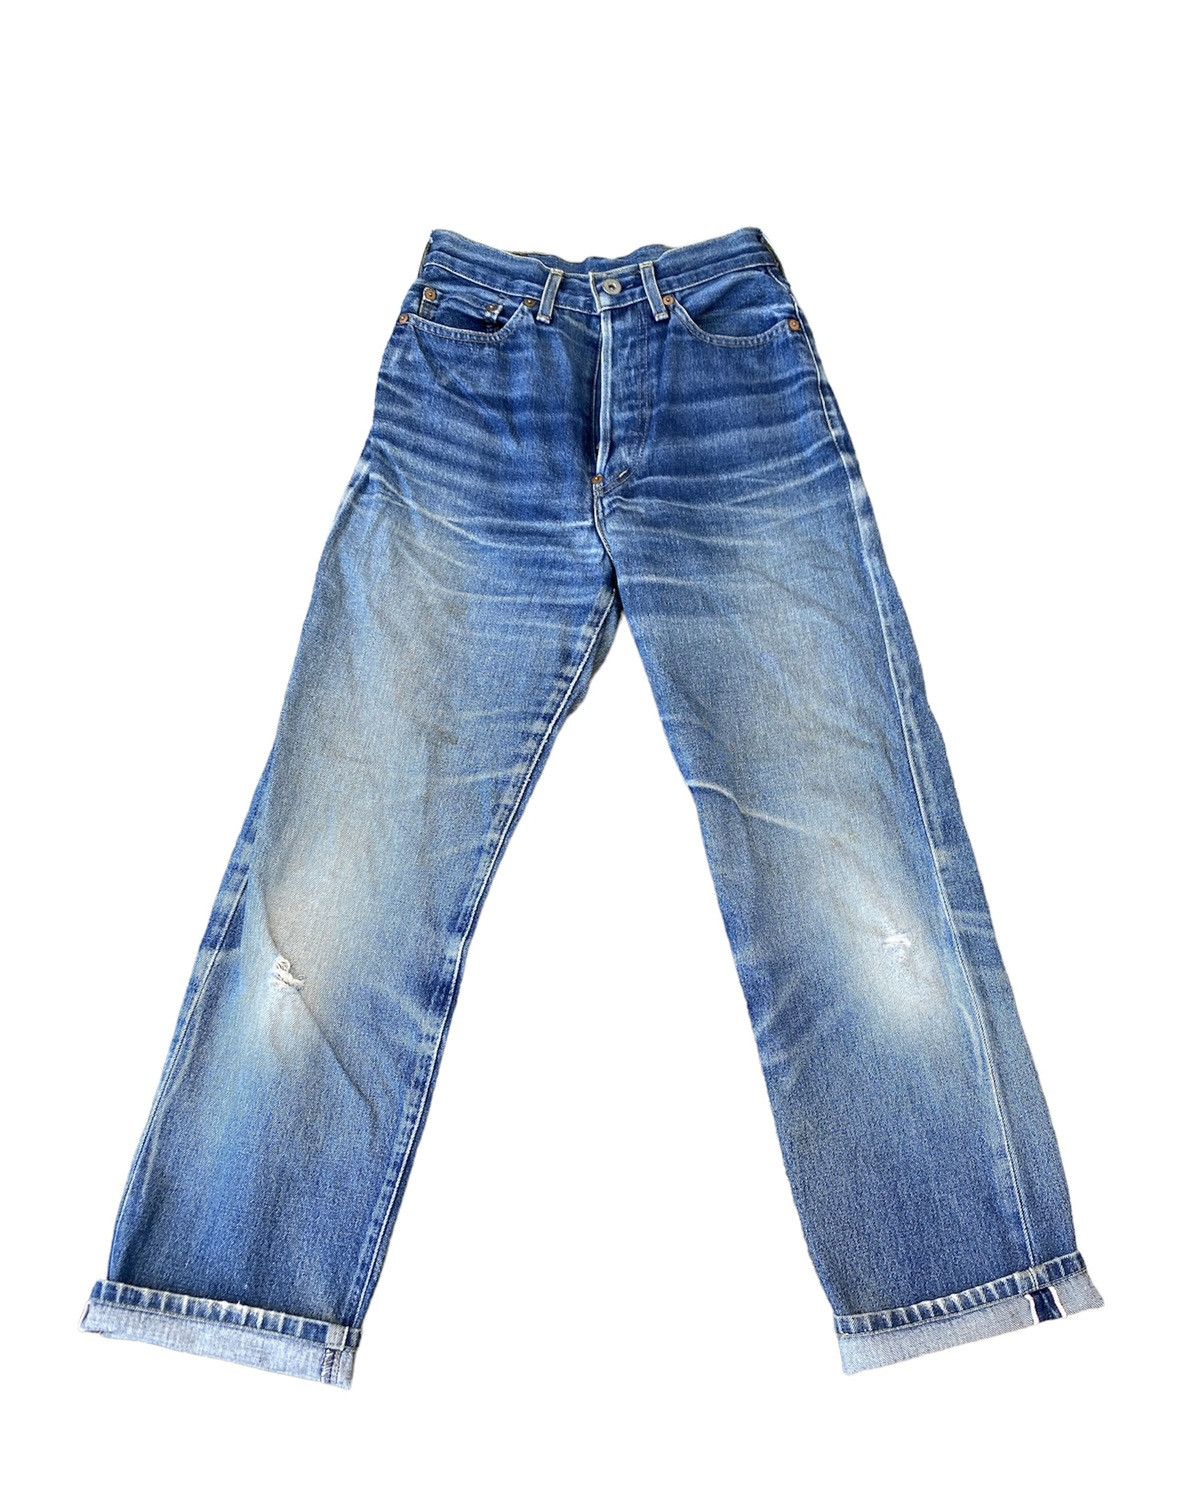 Levi's Vintage Levi's Big E Lot 701 XX Buckle Belt Selvedge Jeans | Grailed